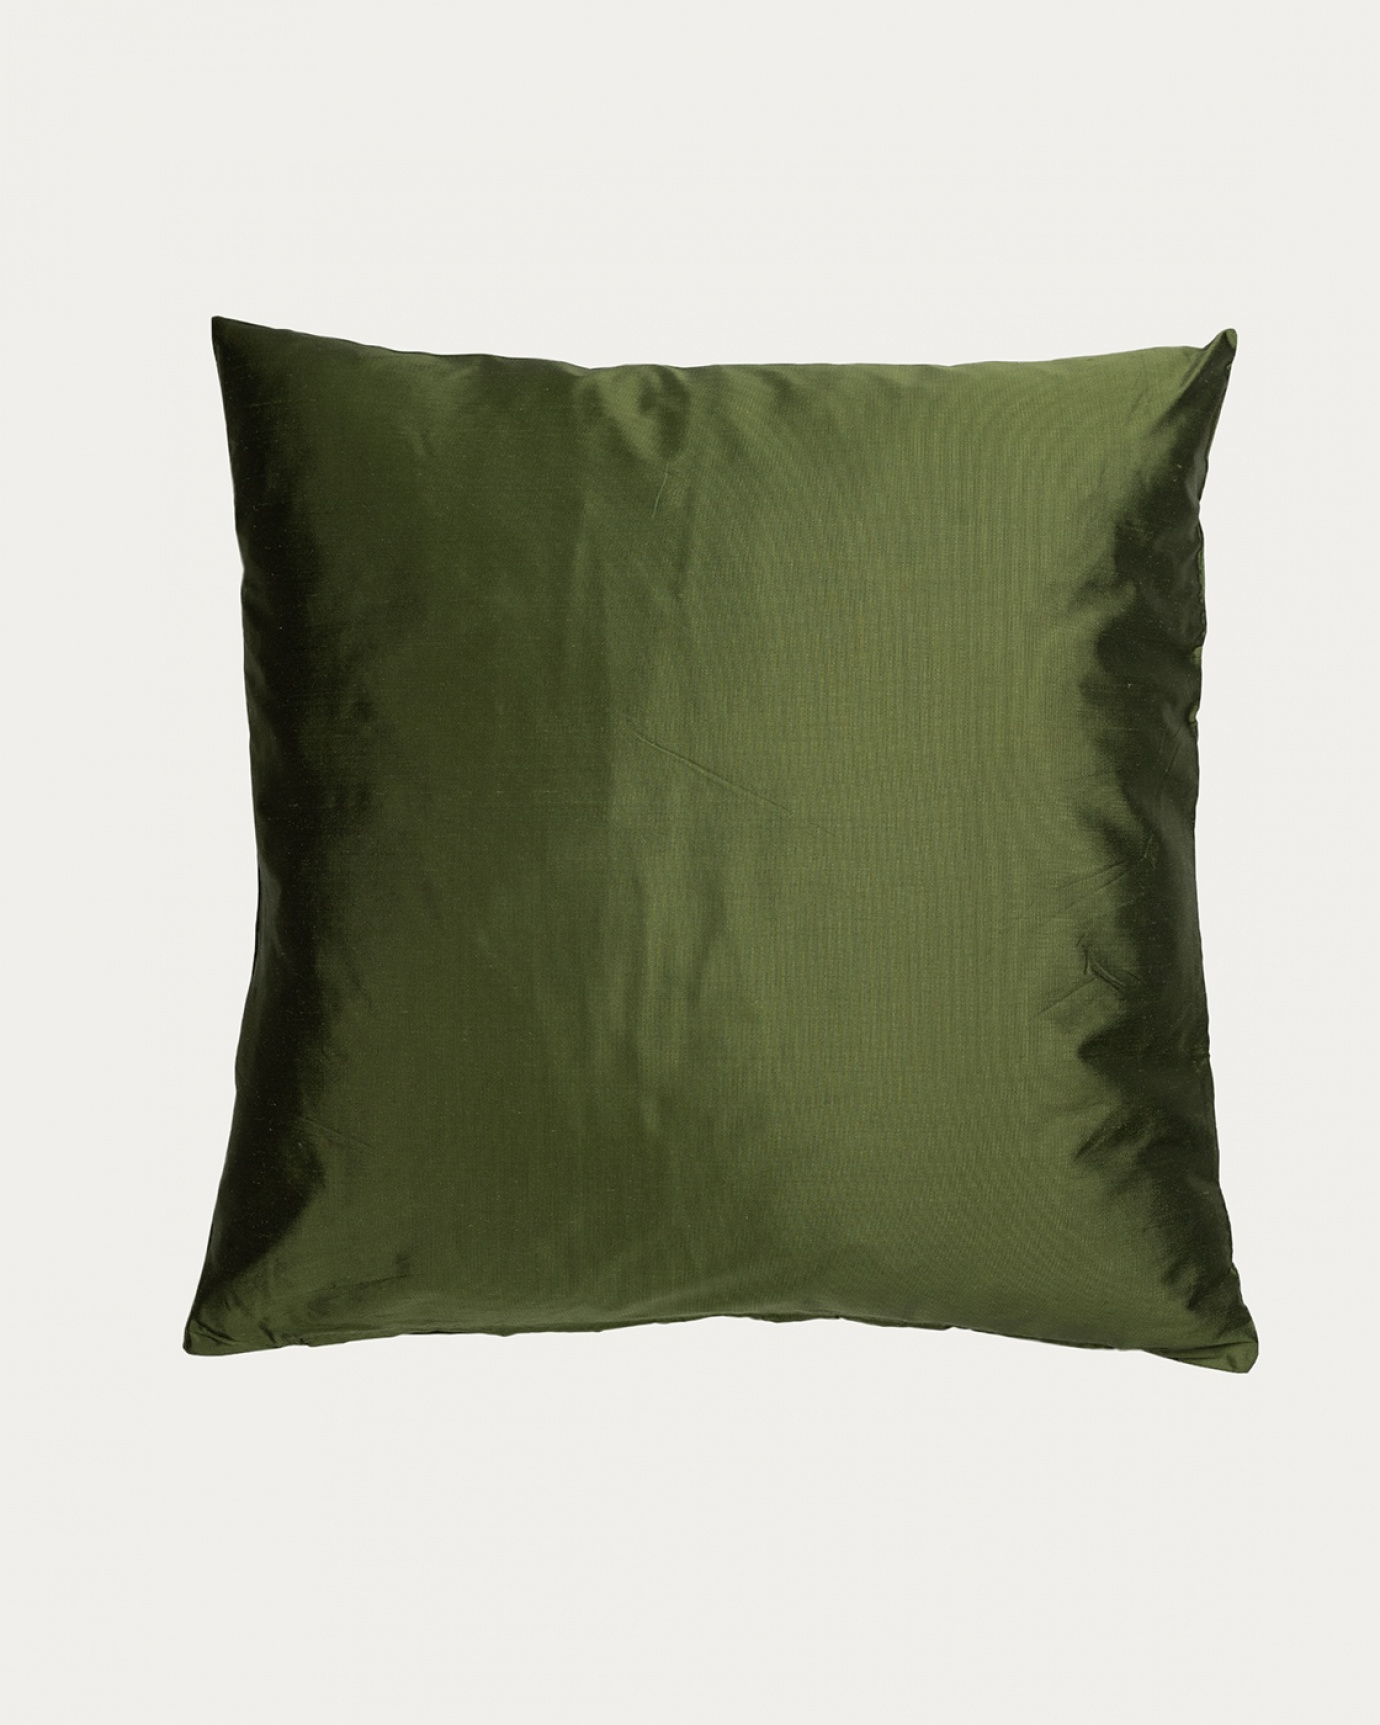 Immagine prodotto verde muschio SILK copricuscini realizzata in 100% seta dupion grezza che dona una bella lucentezza da LINUM DESIGN. Dimensioni 50x50 cm.